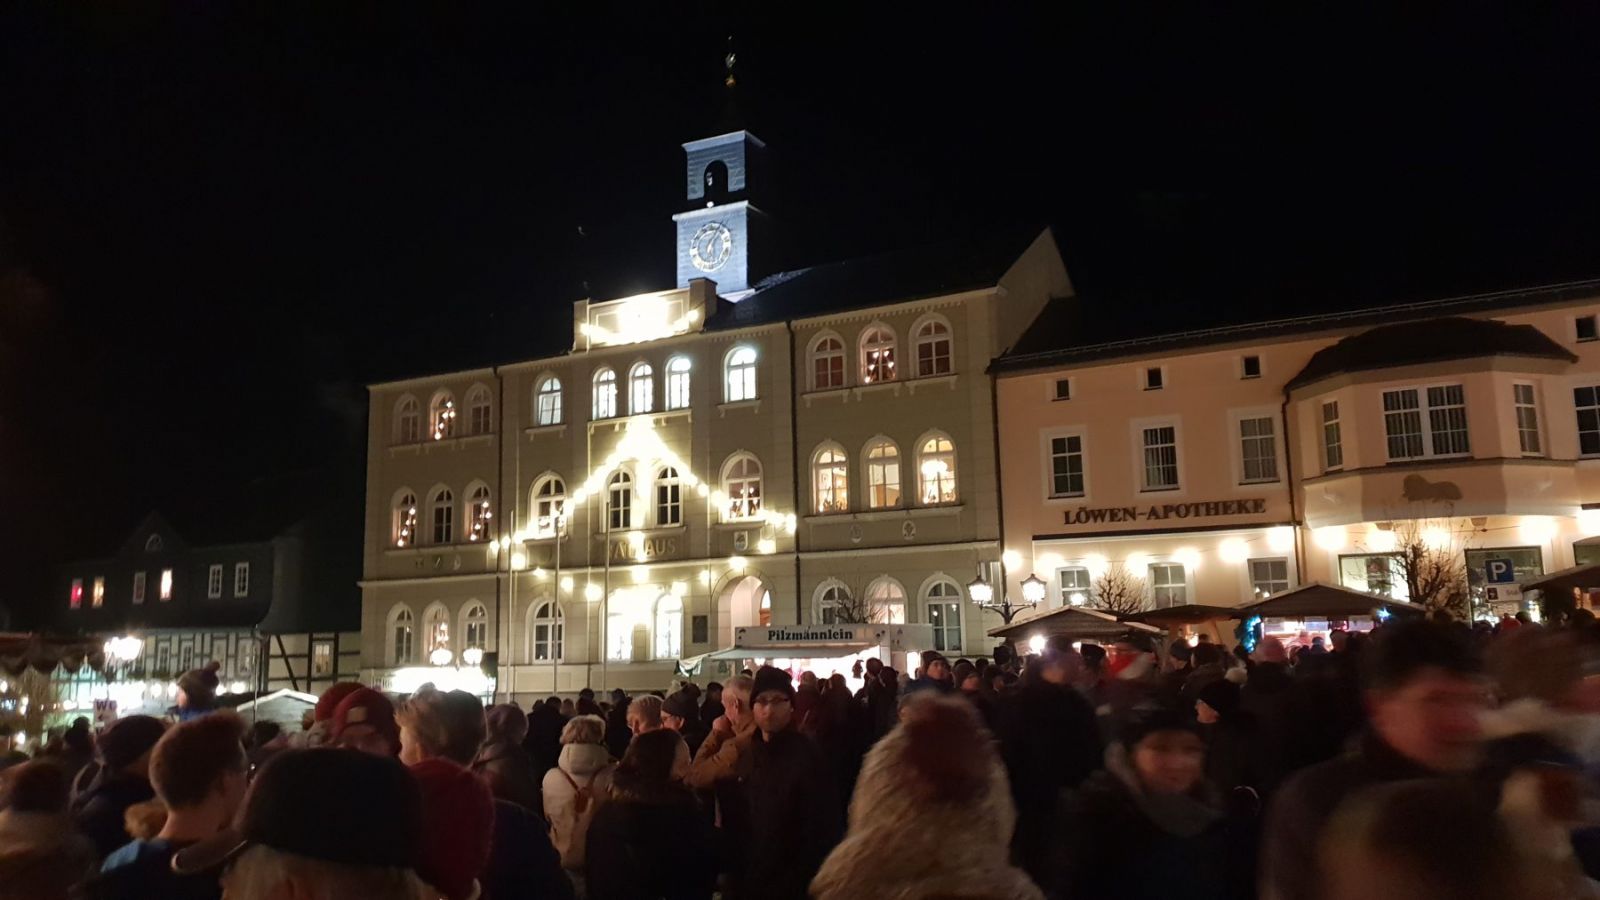 Zwönitzer Rathaus in der Weihnachtszeit